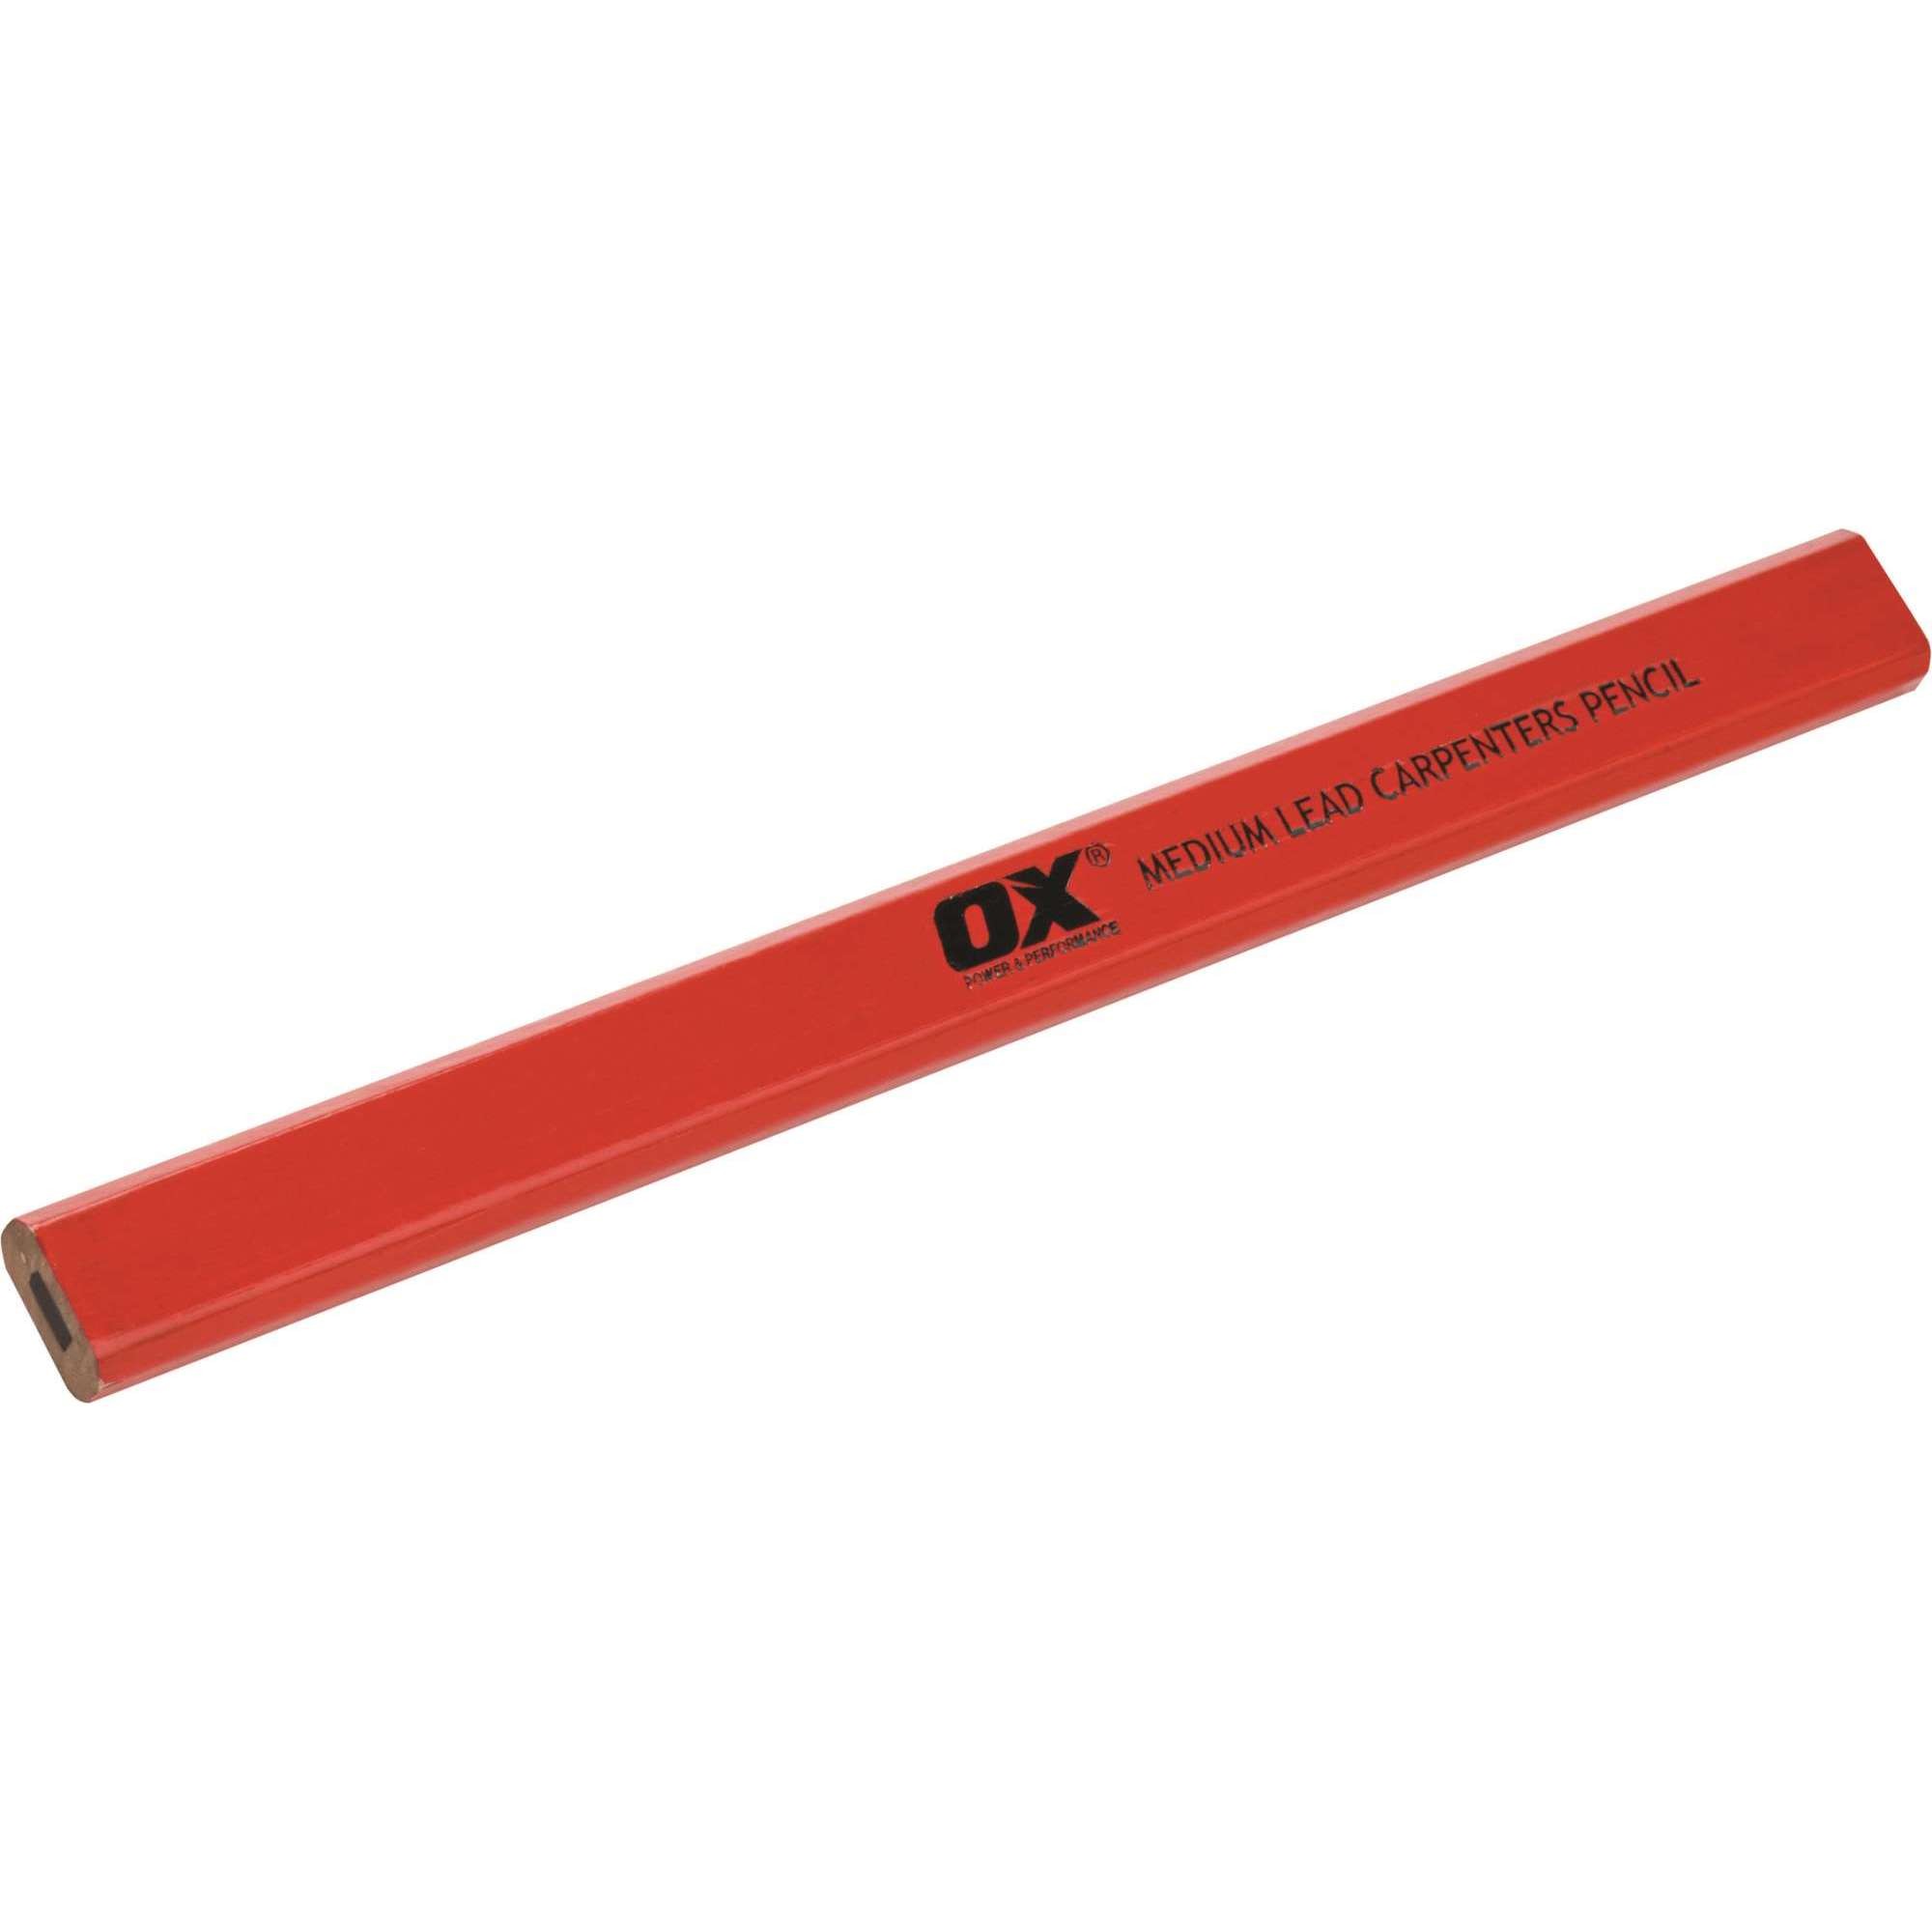 Ox Trade Red Medium Lead Carpenter'S Pencils (10Pk)